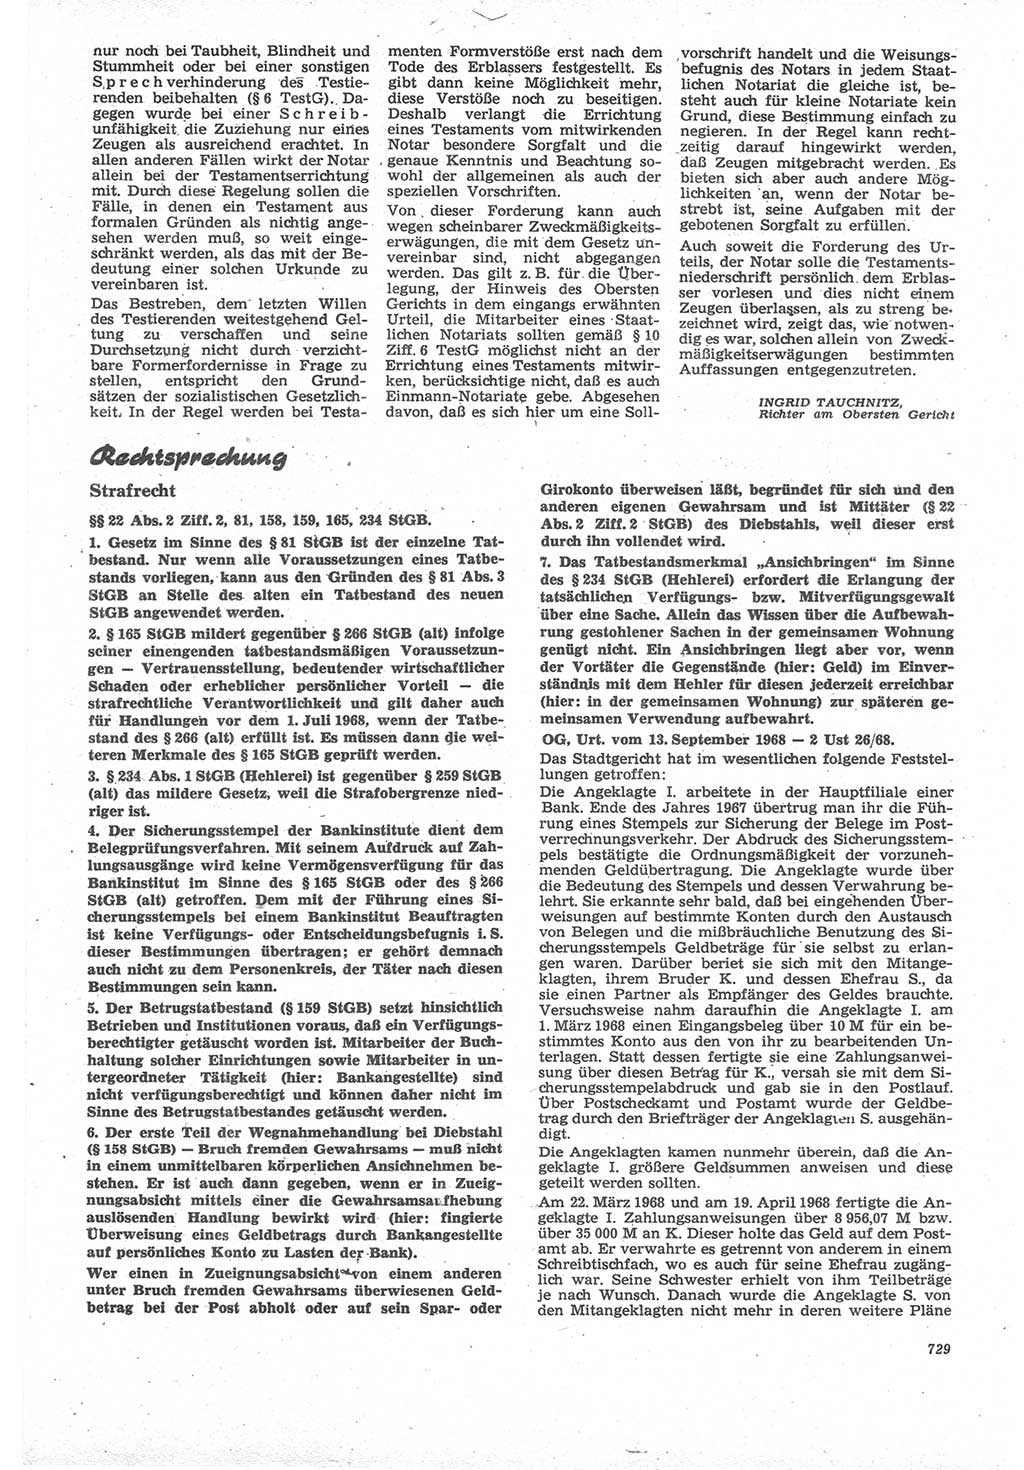 Neue Justiz (NJ), Zeitschrift für Recht und Rechtswissenschaft [Deutsche Demokratische Republik (DDR)], 22. Jahrgang 1968, Seite 729 (NJ DDR 1968, S. 729)